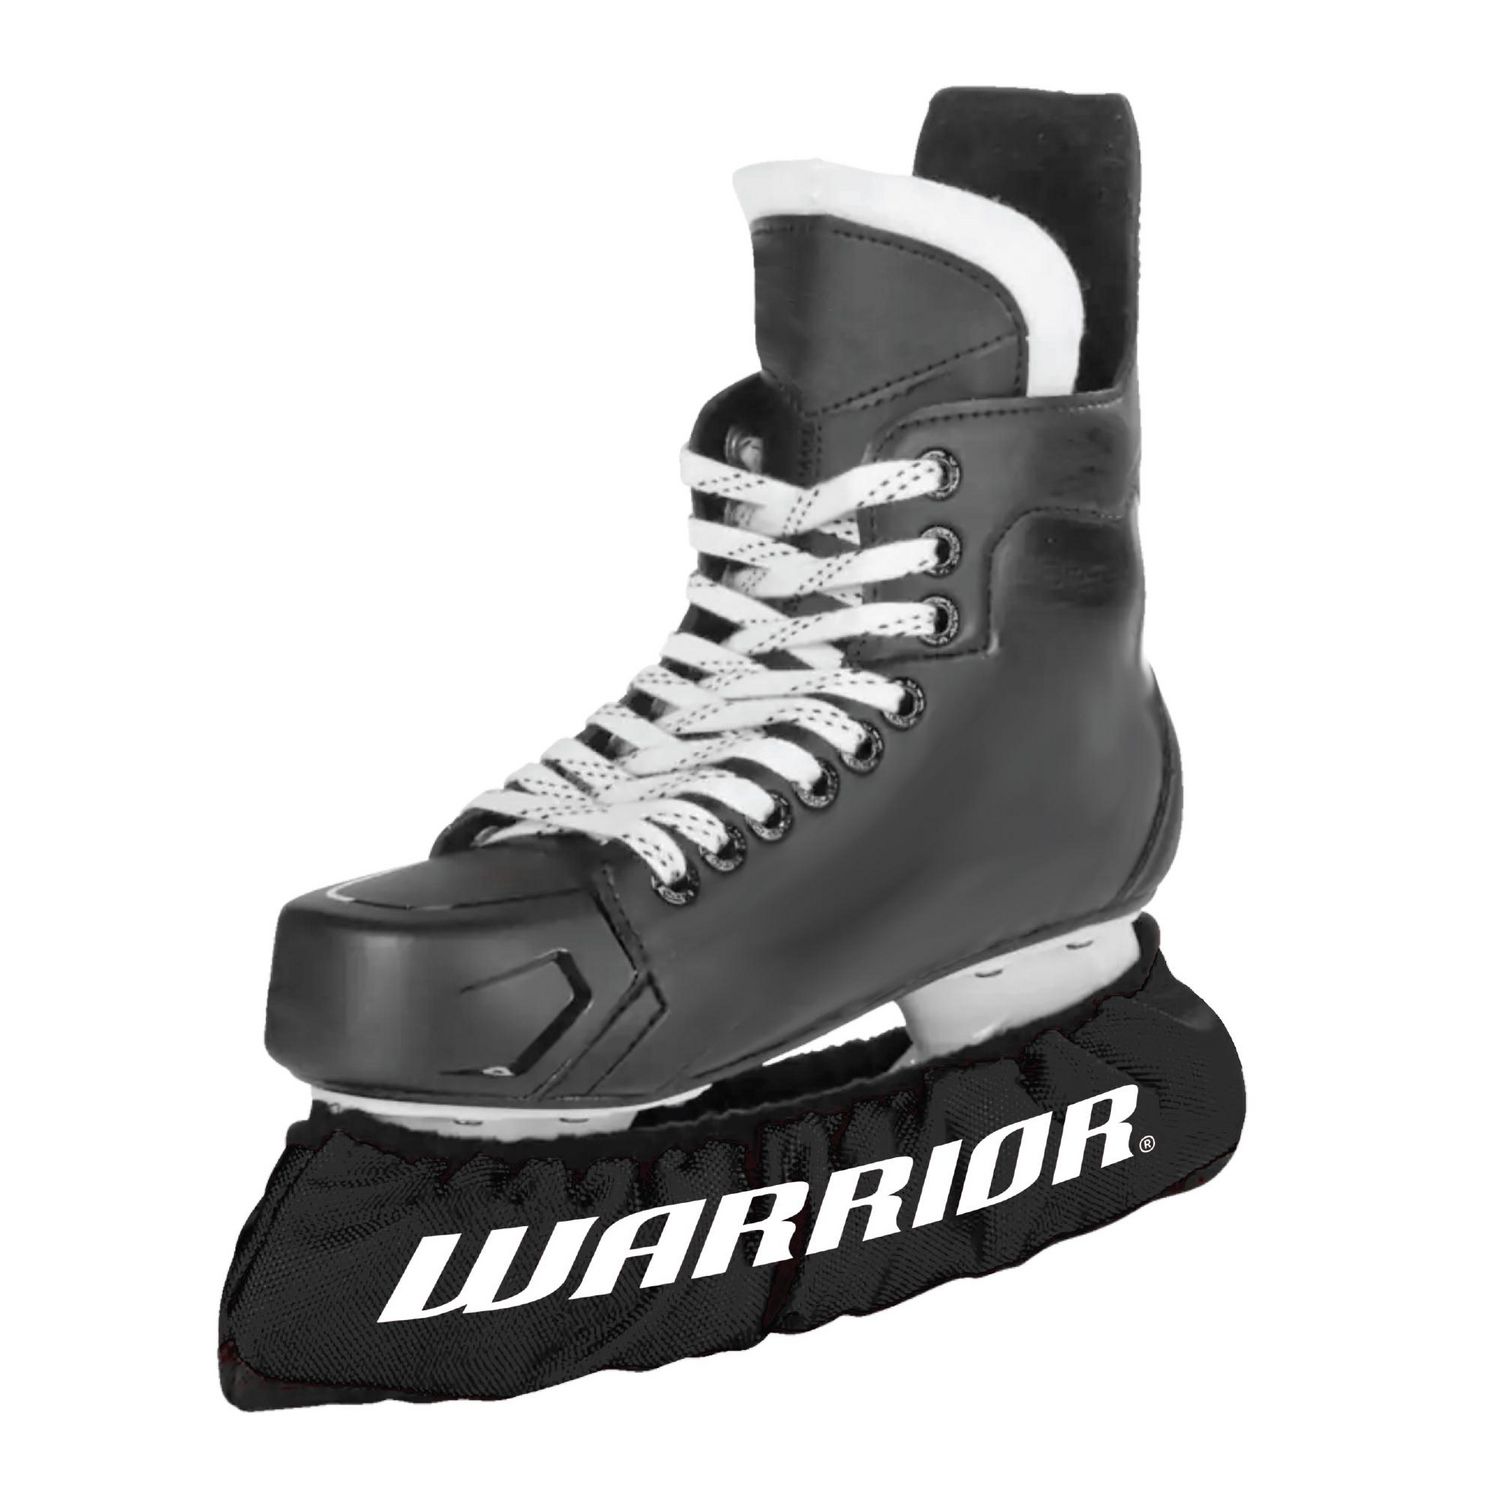 Warrior Skate Soakers - Set of 2 - Junior - Black, Skate sizes 1-5 